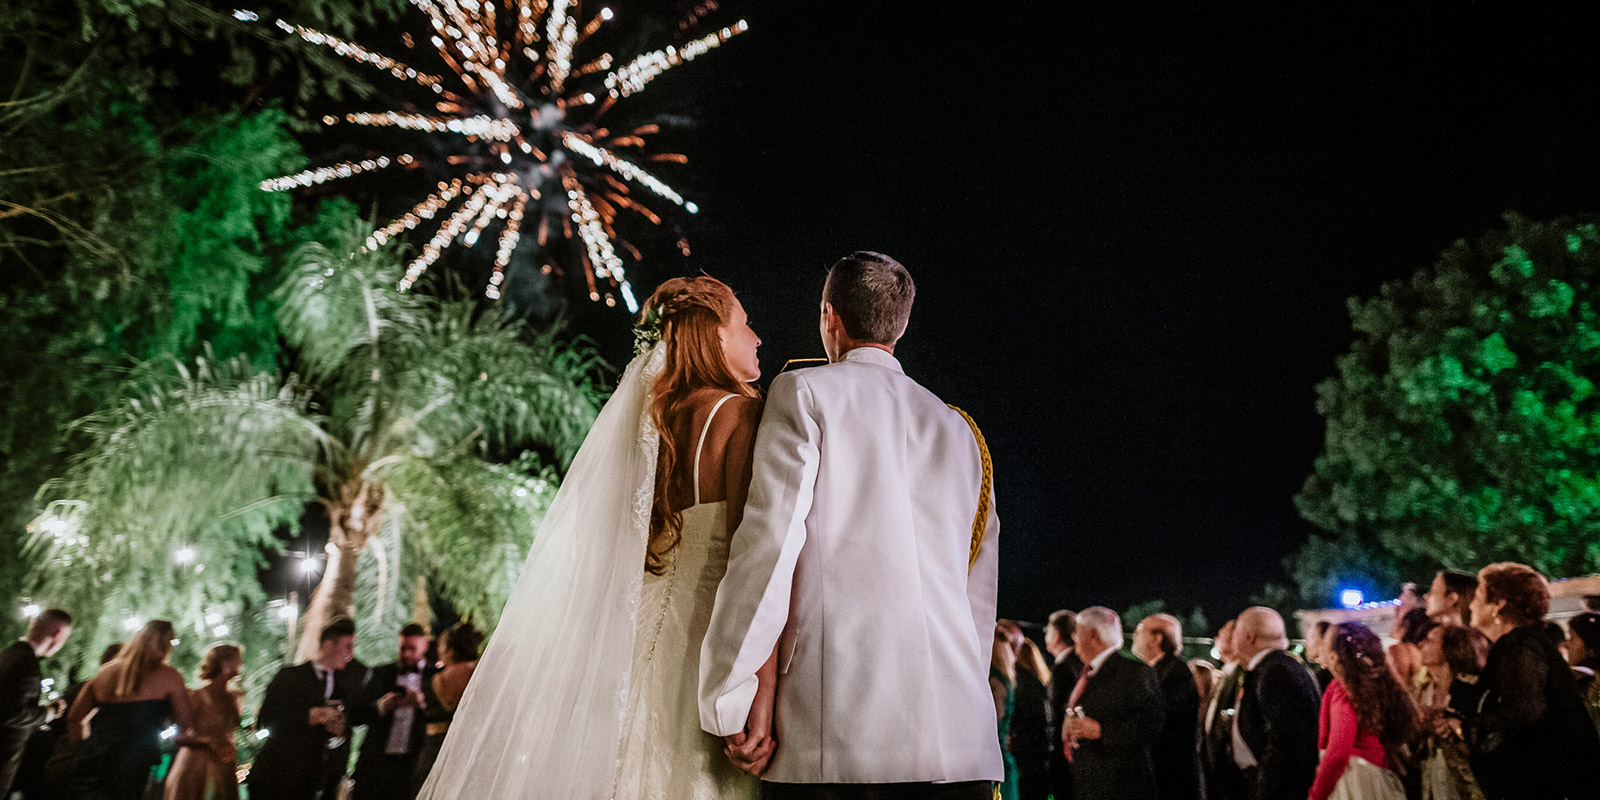 Fuegos artificiales en la celebración de boda, los novios junto a sus familiares, fotografía documental Ramón Herrera Fotógrafo